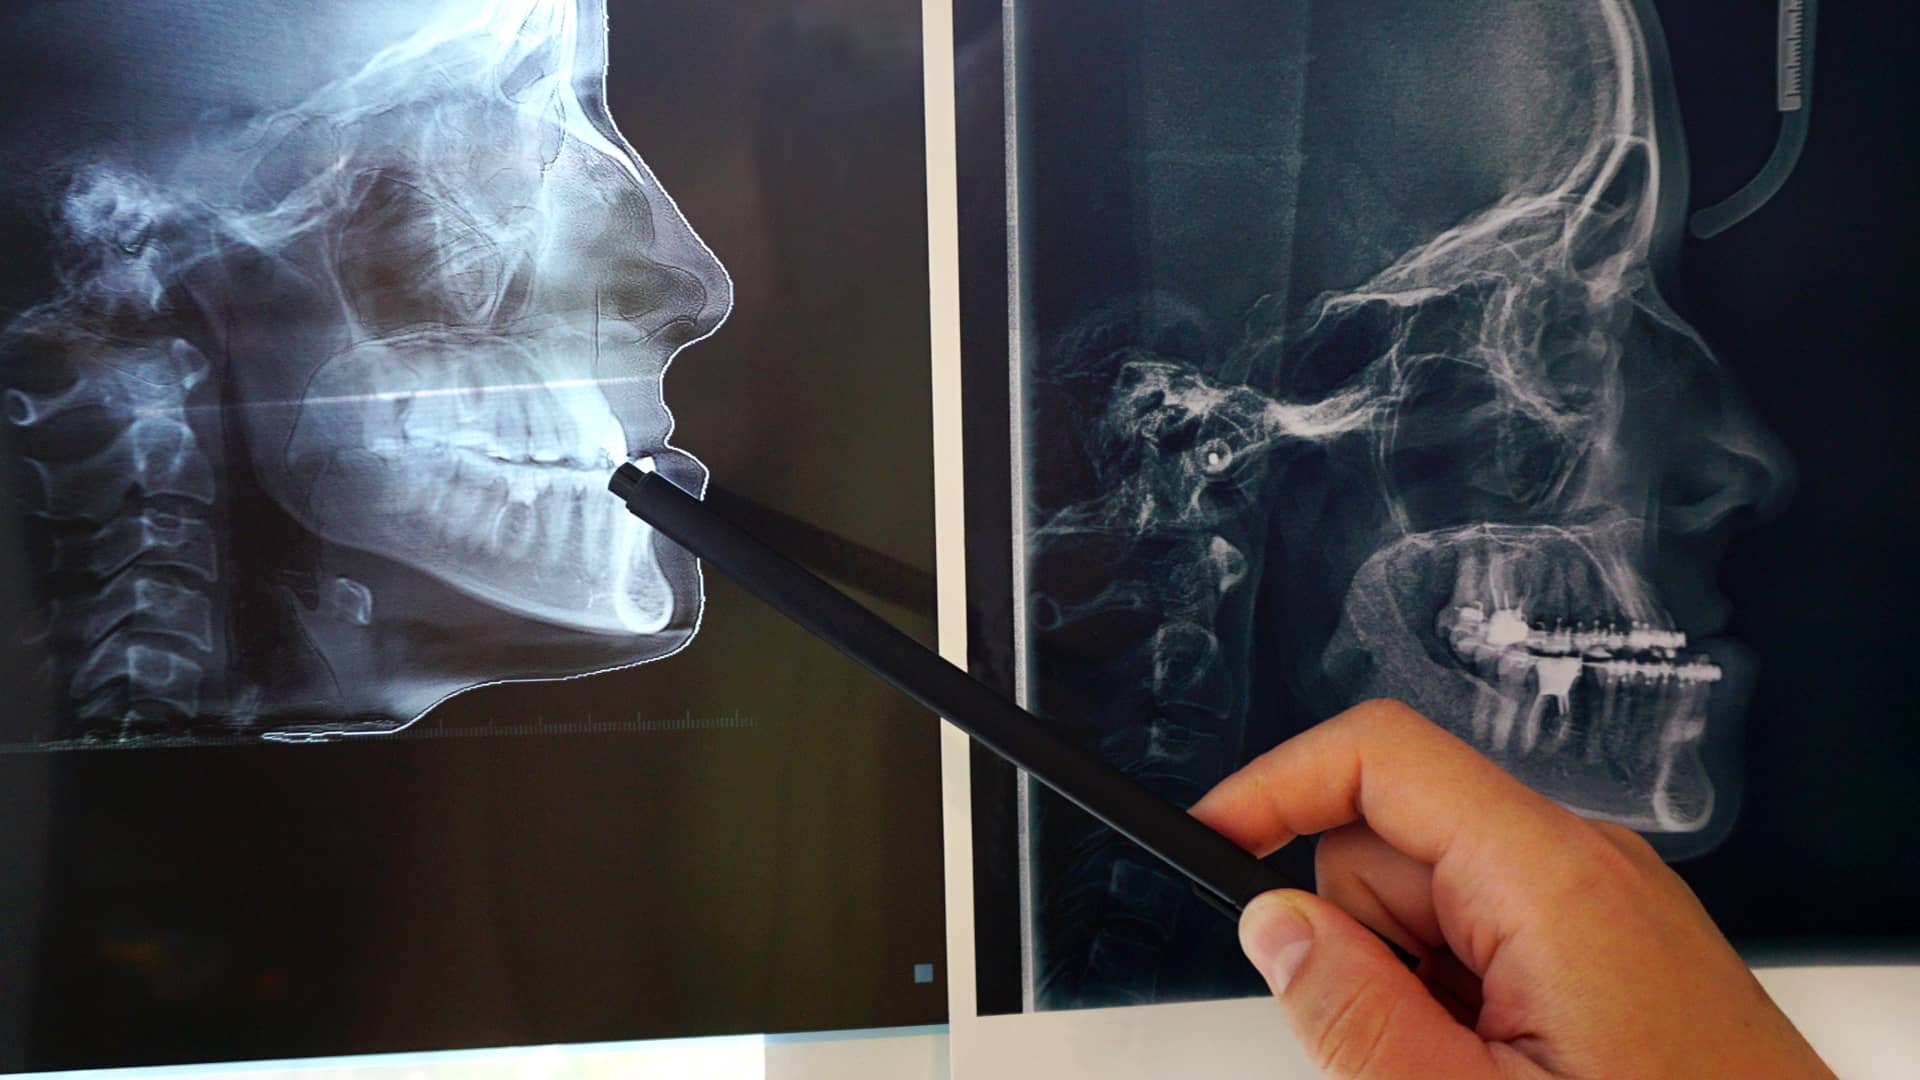 Médico maxilofacial del cuadro médico del seguro adeslas revisando la tomografía de un paciente